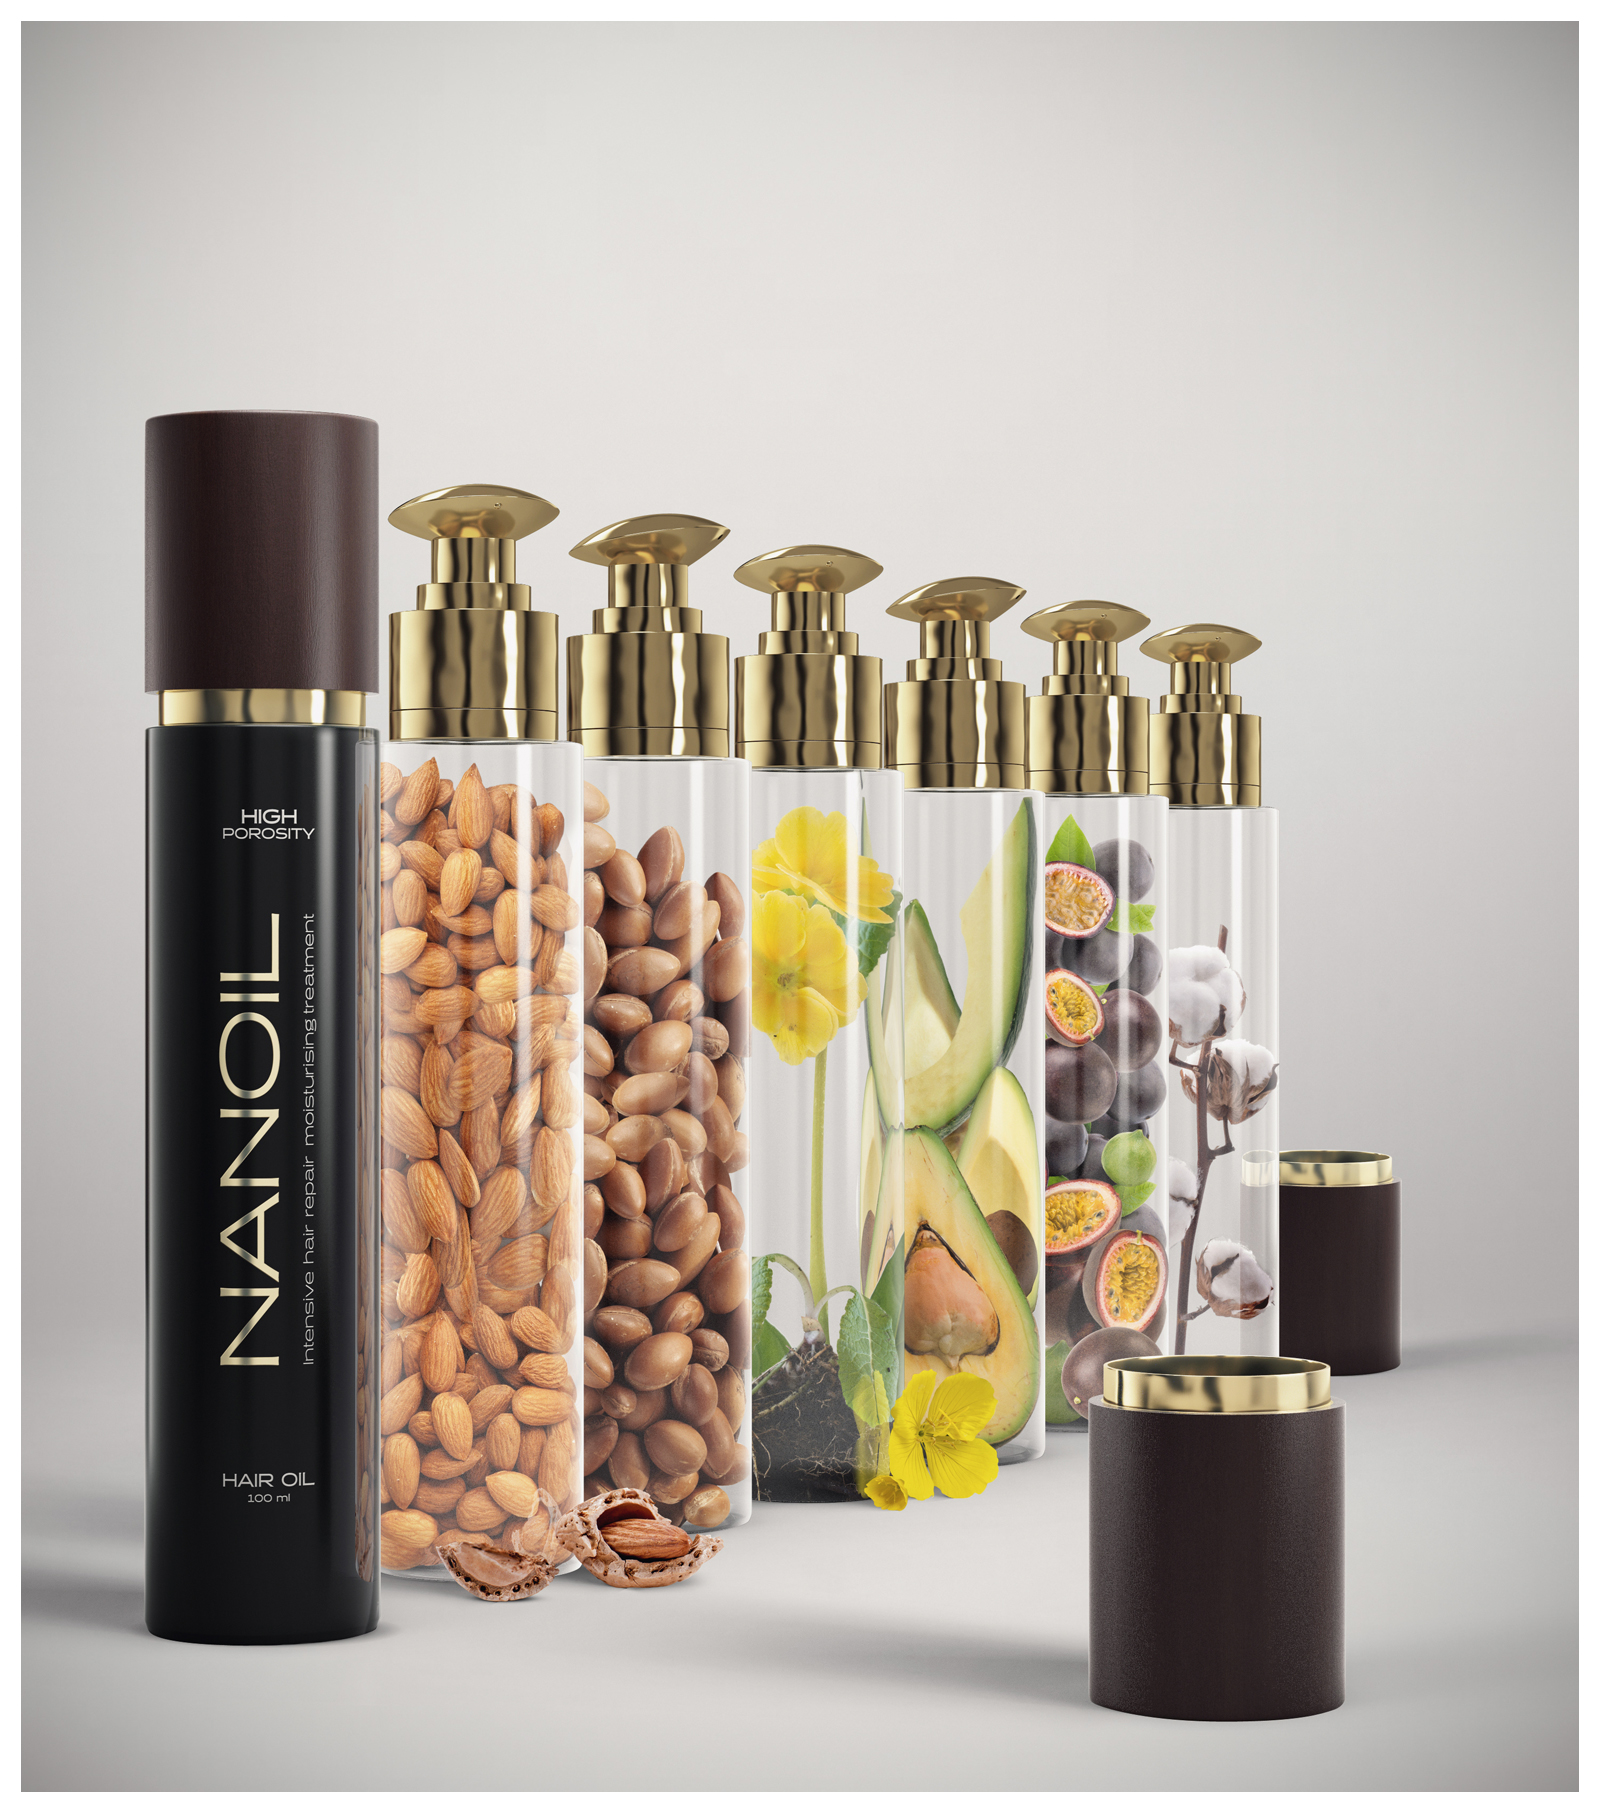 Šesť baniek obsahujúcich orechy, plátky avokáda a bavlnu, vedľa fľaše s vlasovým olejom Nanoil